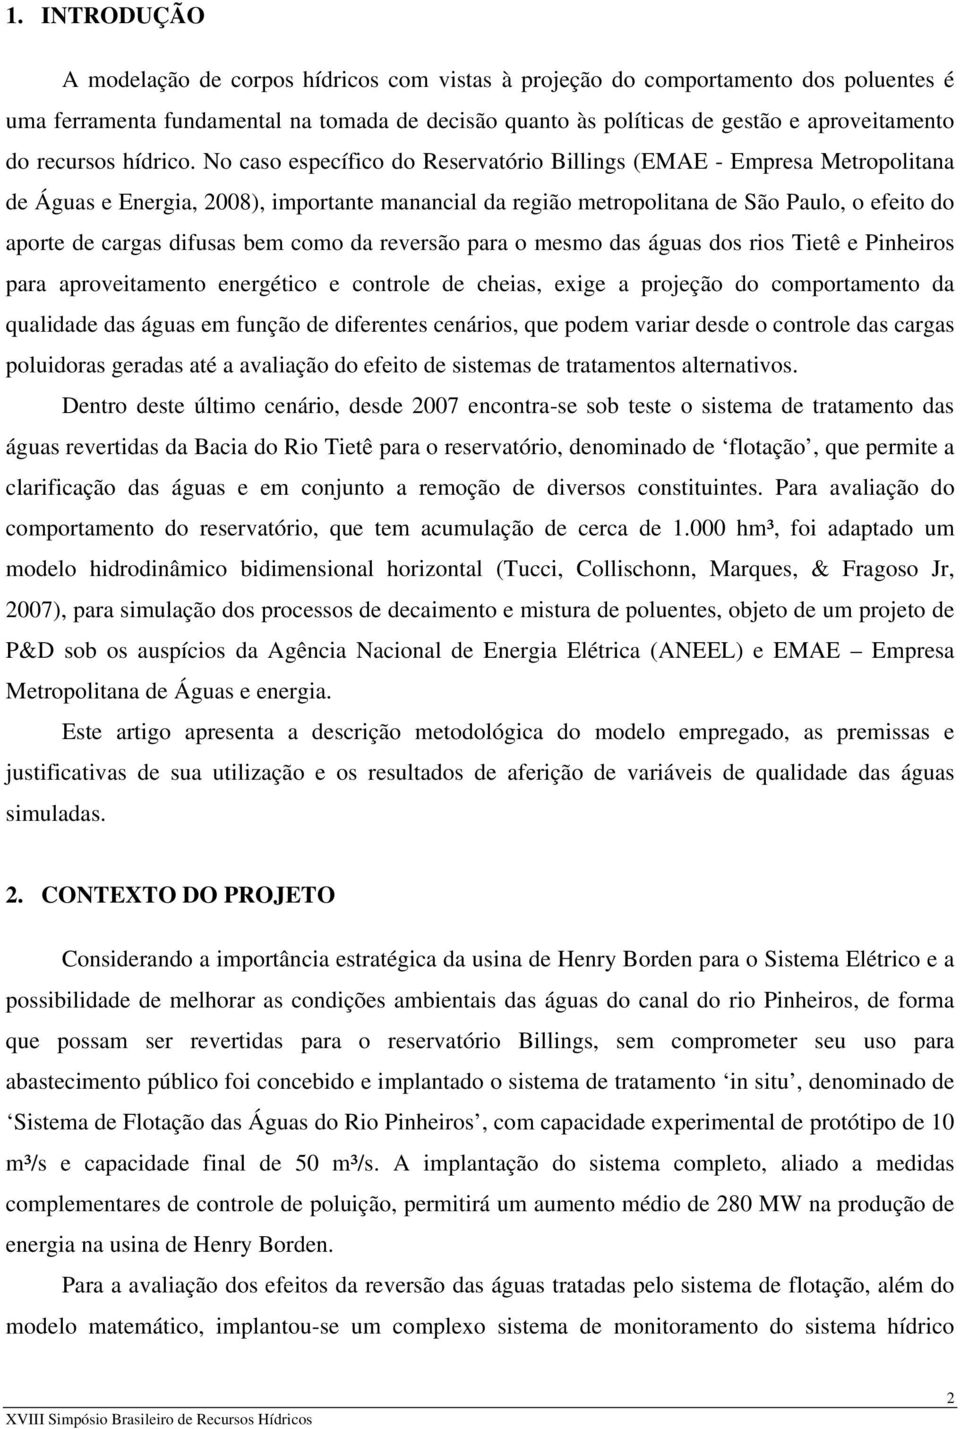 No caso específico do Reservatório Billings (EMAE - Empresa Metropolitana de Águas e Energia, 2008), importante manancial da região metropolitana de São Paulo, o efeito do aporte de cargas difusas